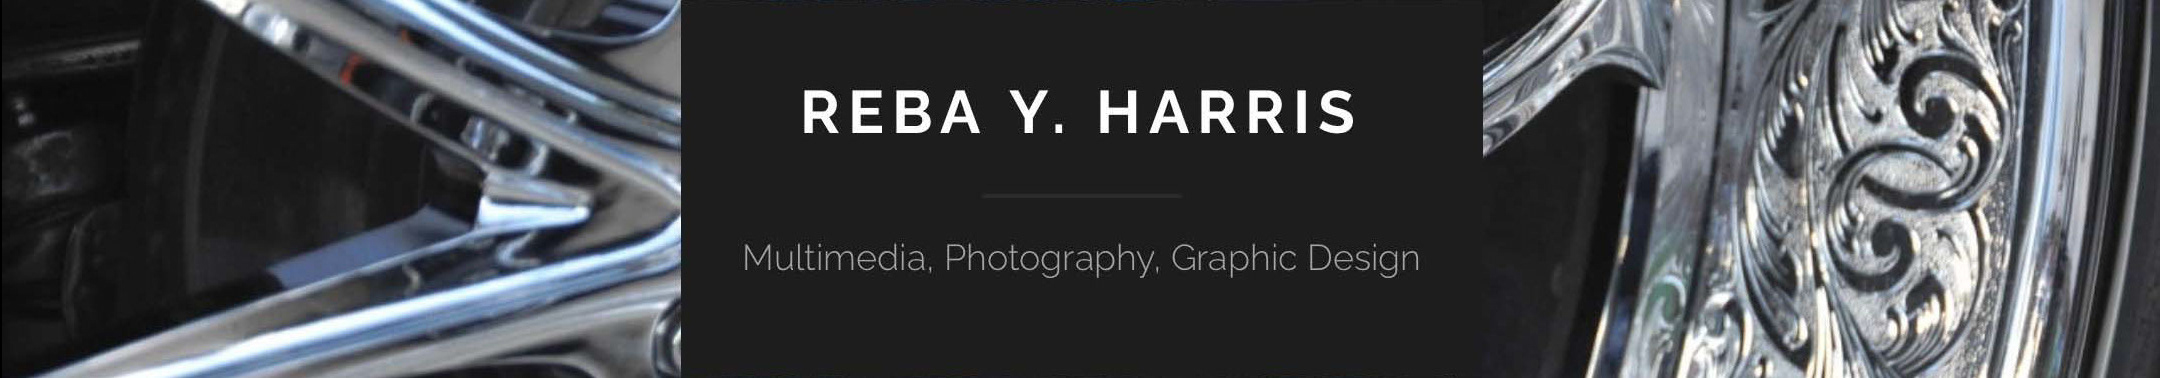 Reba Harris's profile banner